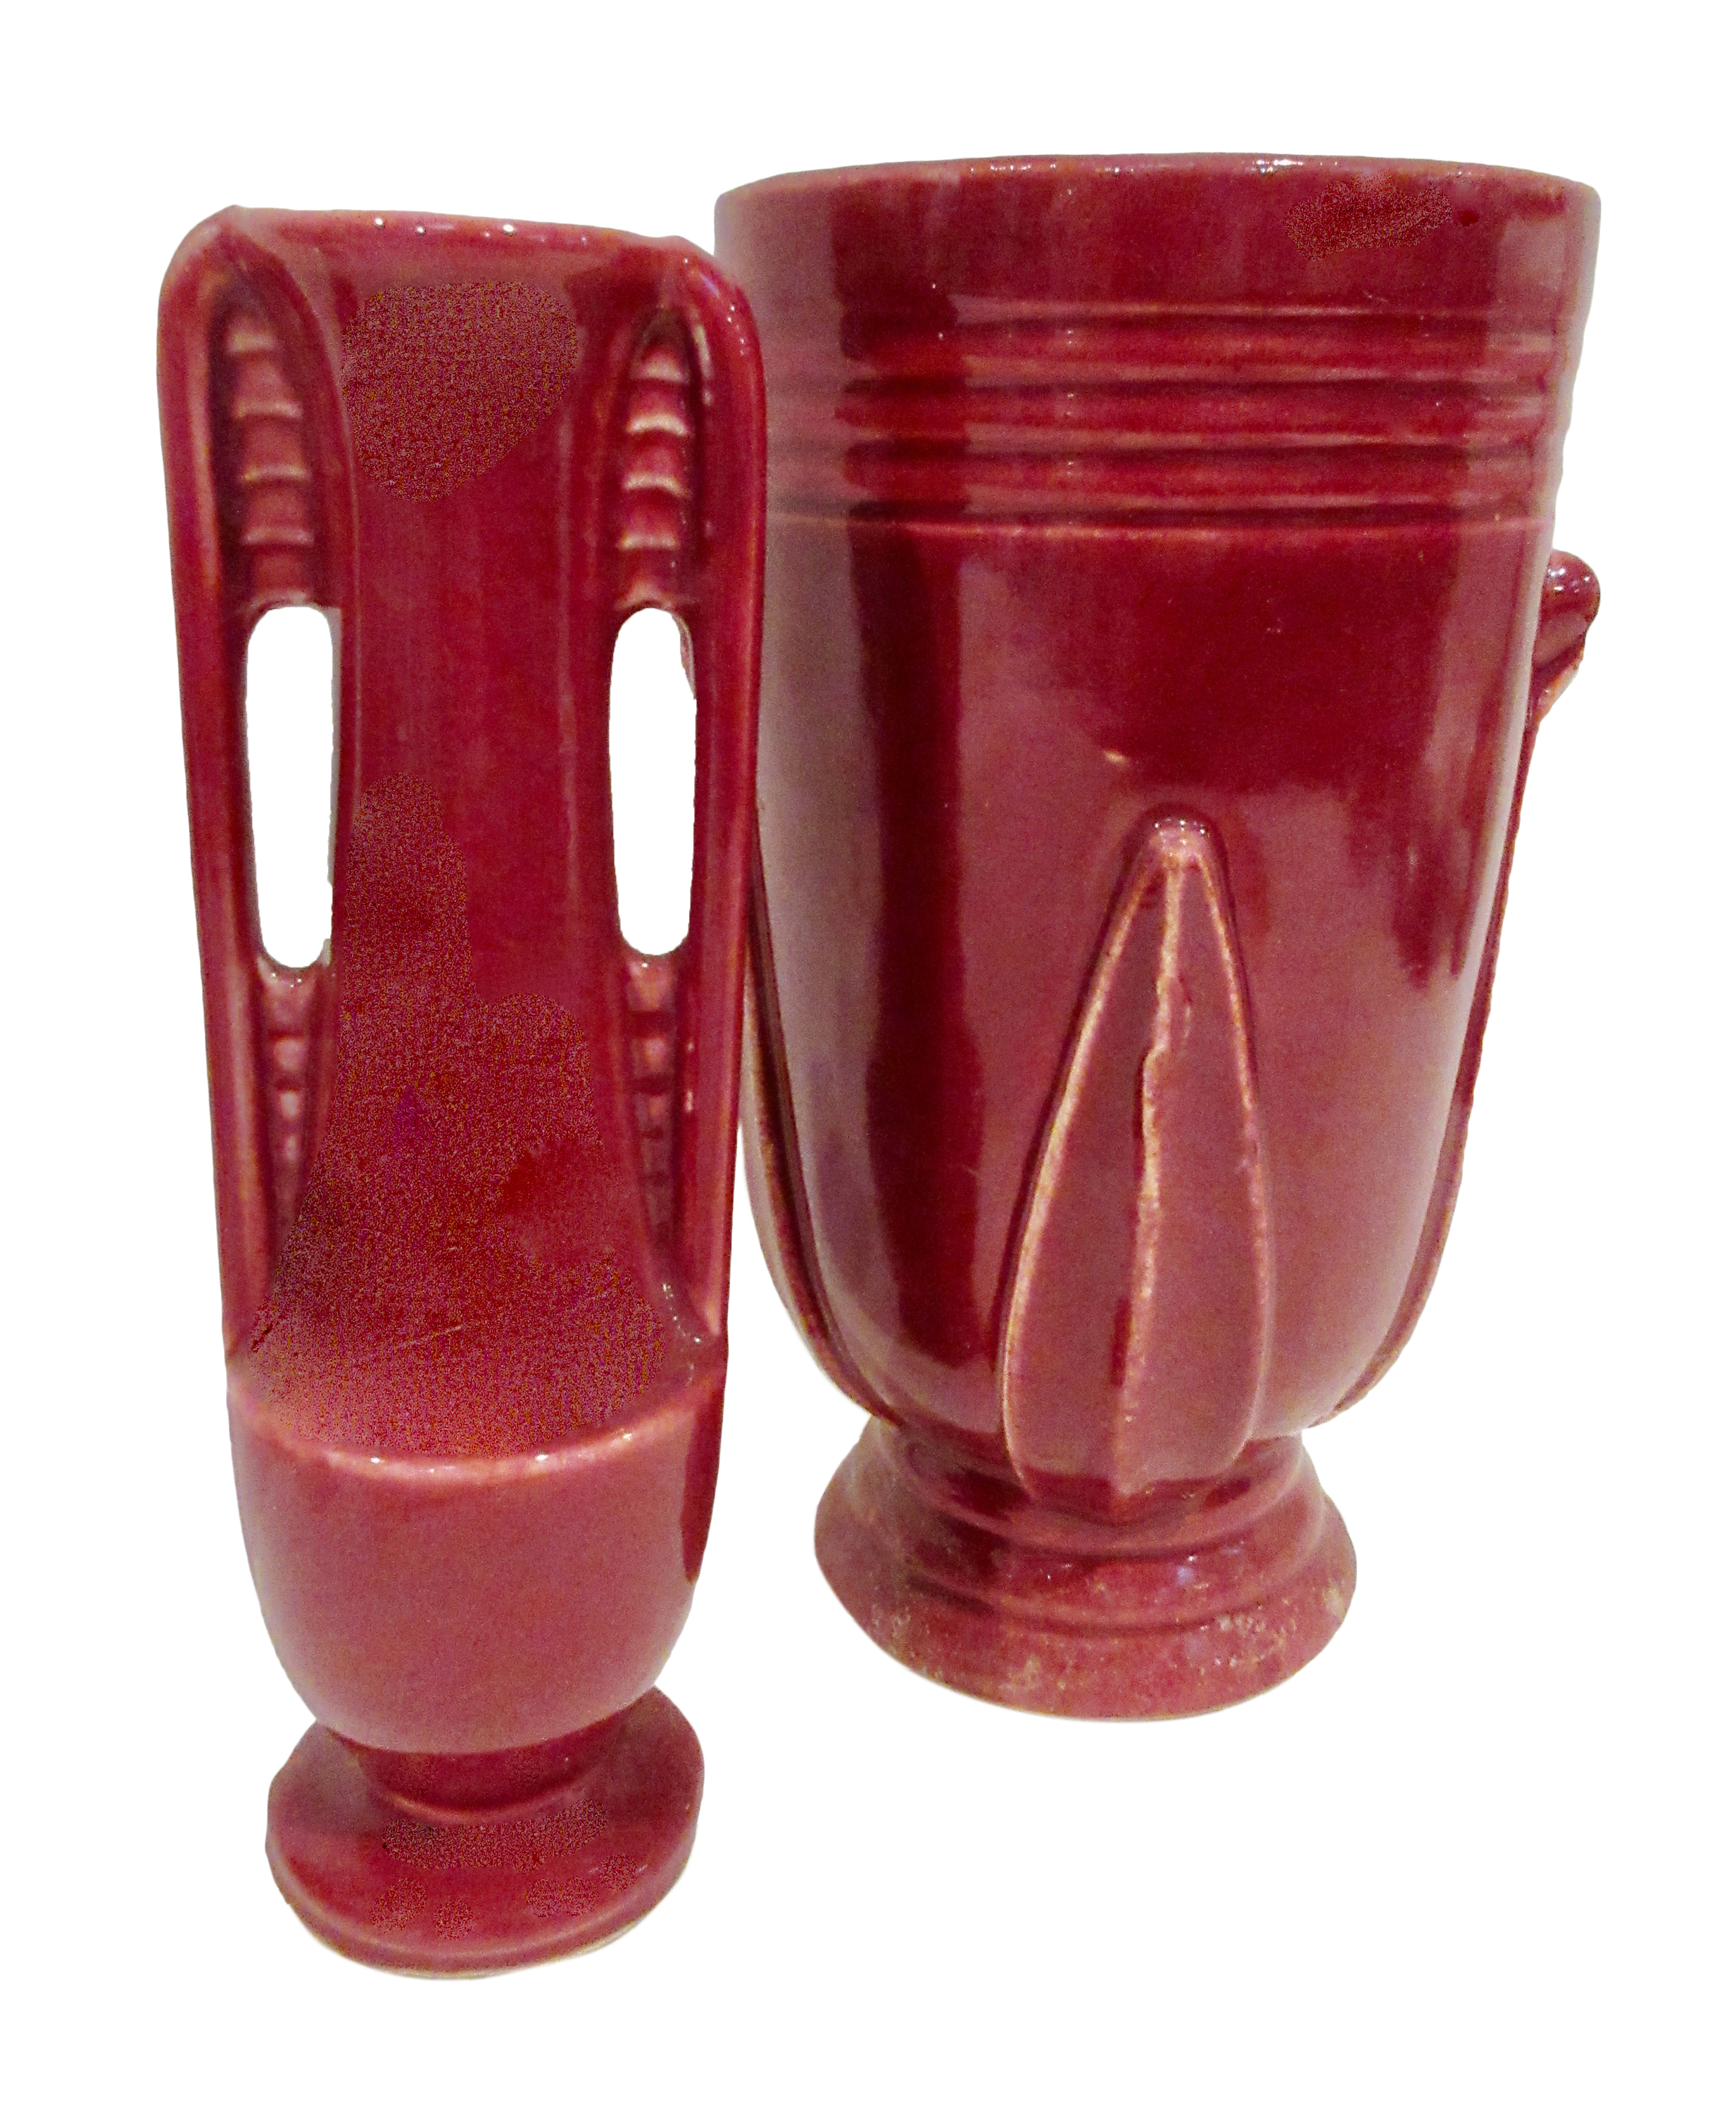 American Pottery Art Deco Vases S/2~P77632353